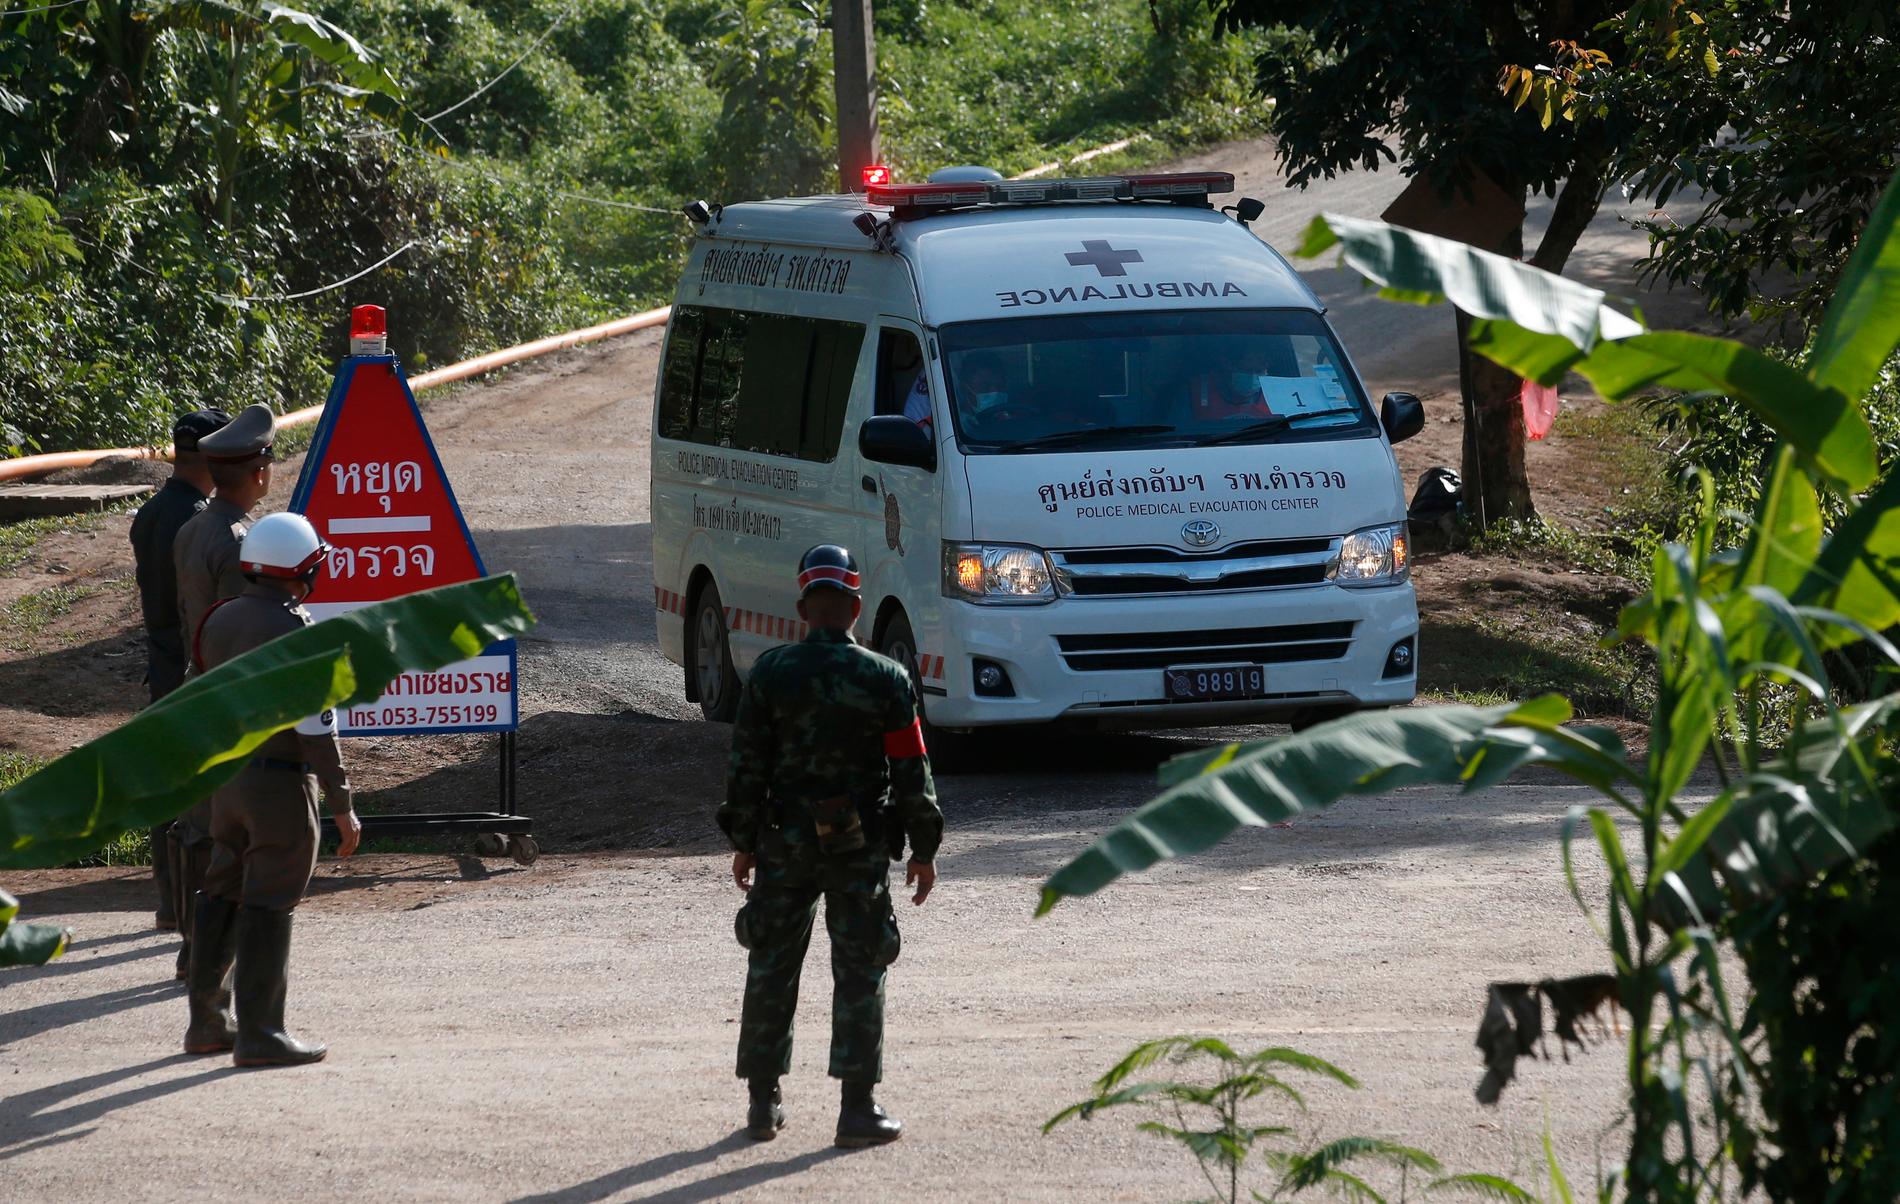 En ambulans med sirenerna påslagna lämnar Tham Luang-grottorna.